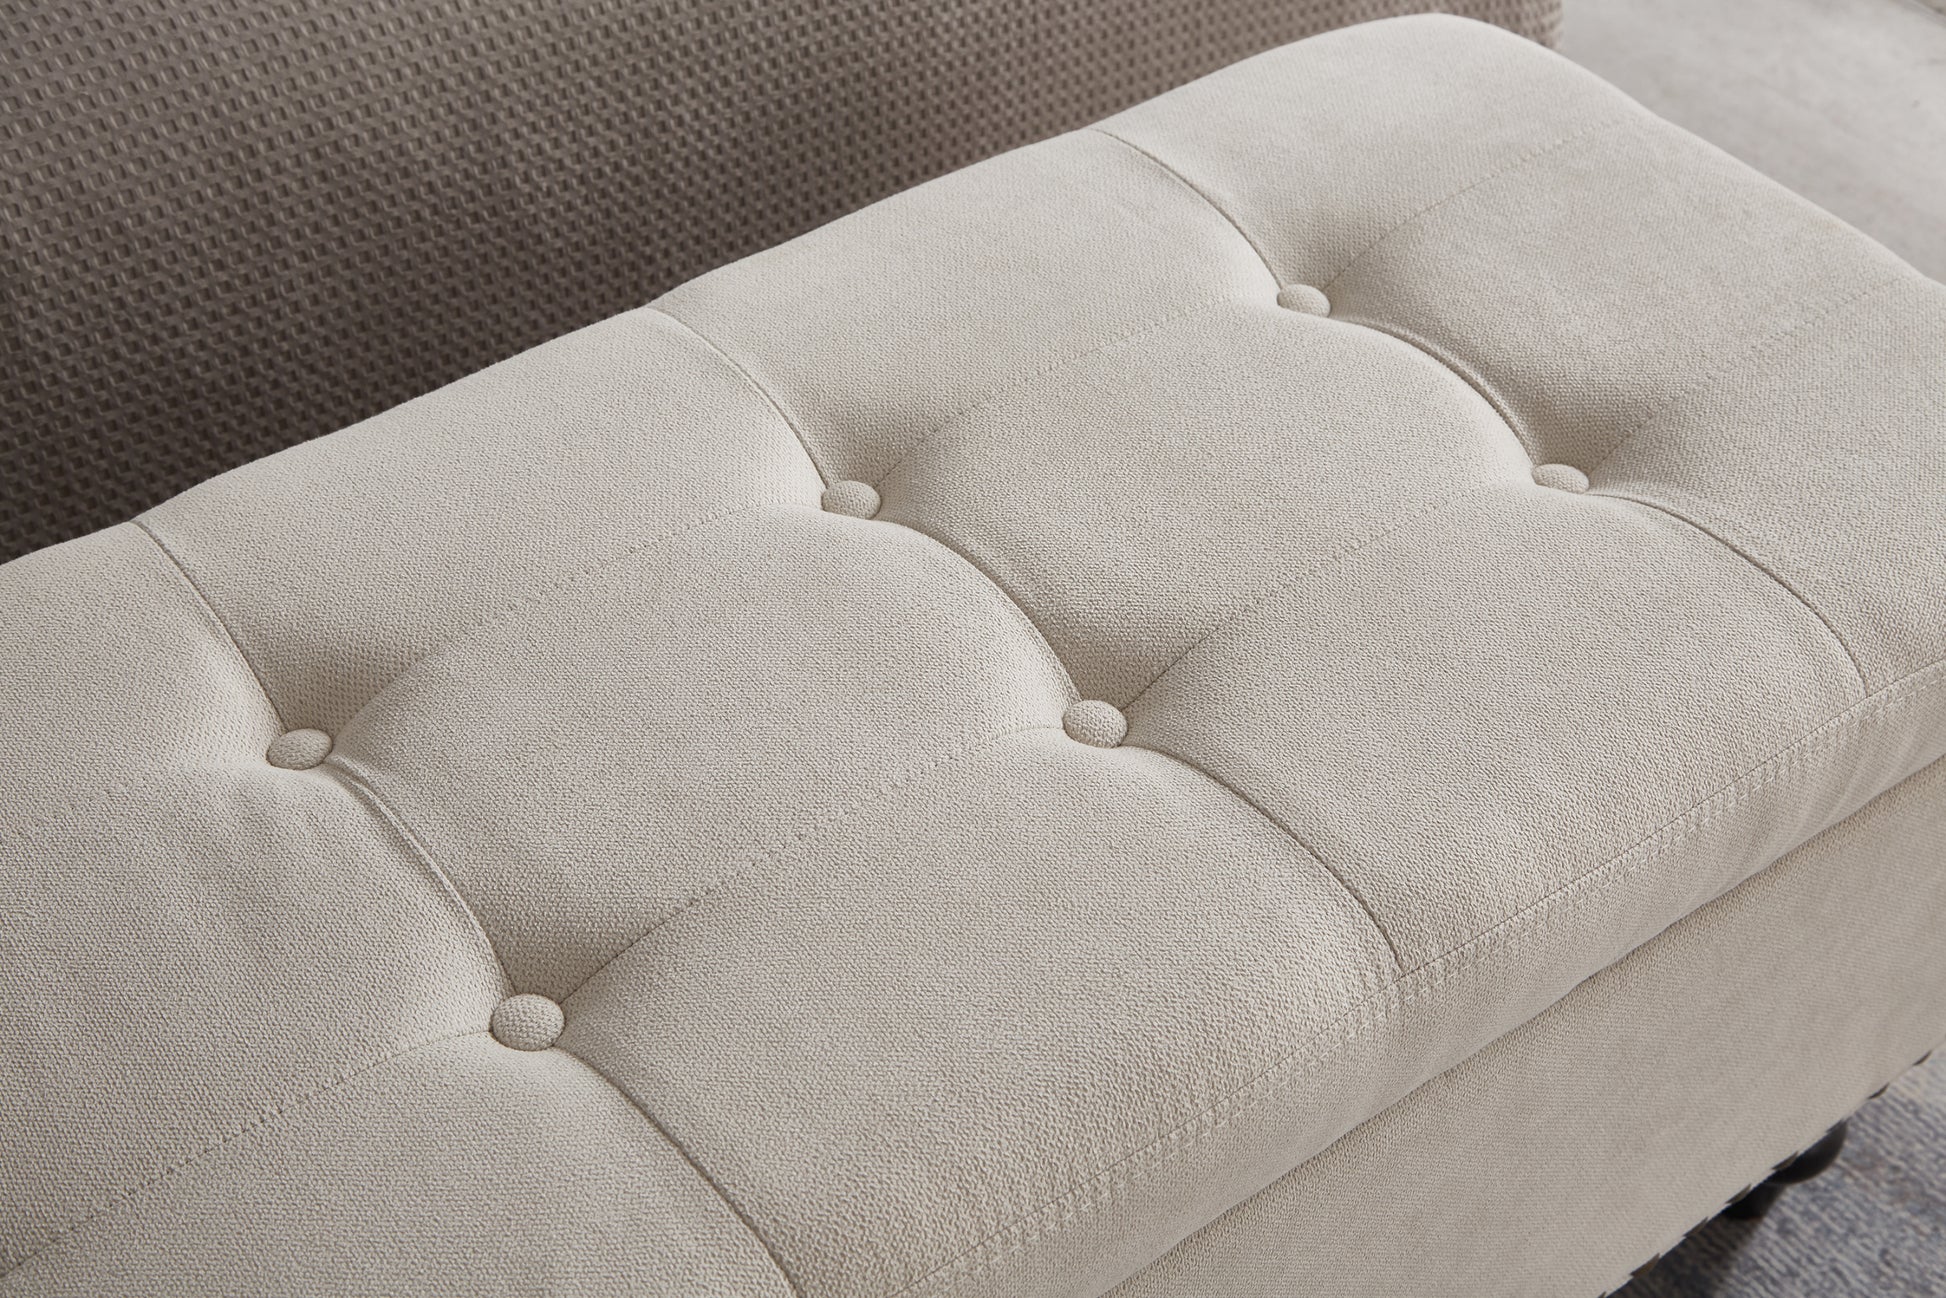 59" Bed Bench Ottoman with Storage Beige Fabric beige-foam-cotton linen